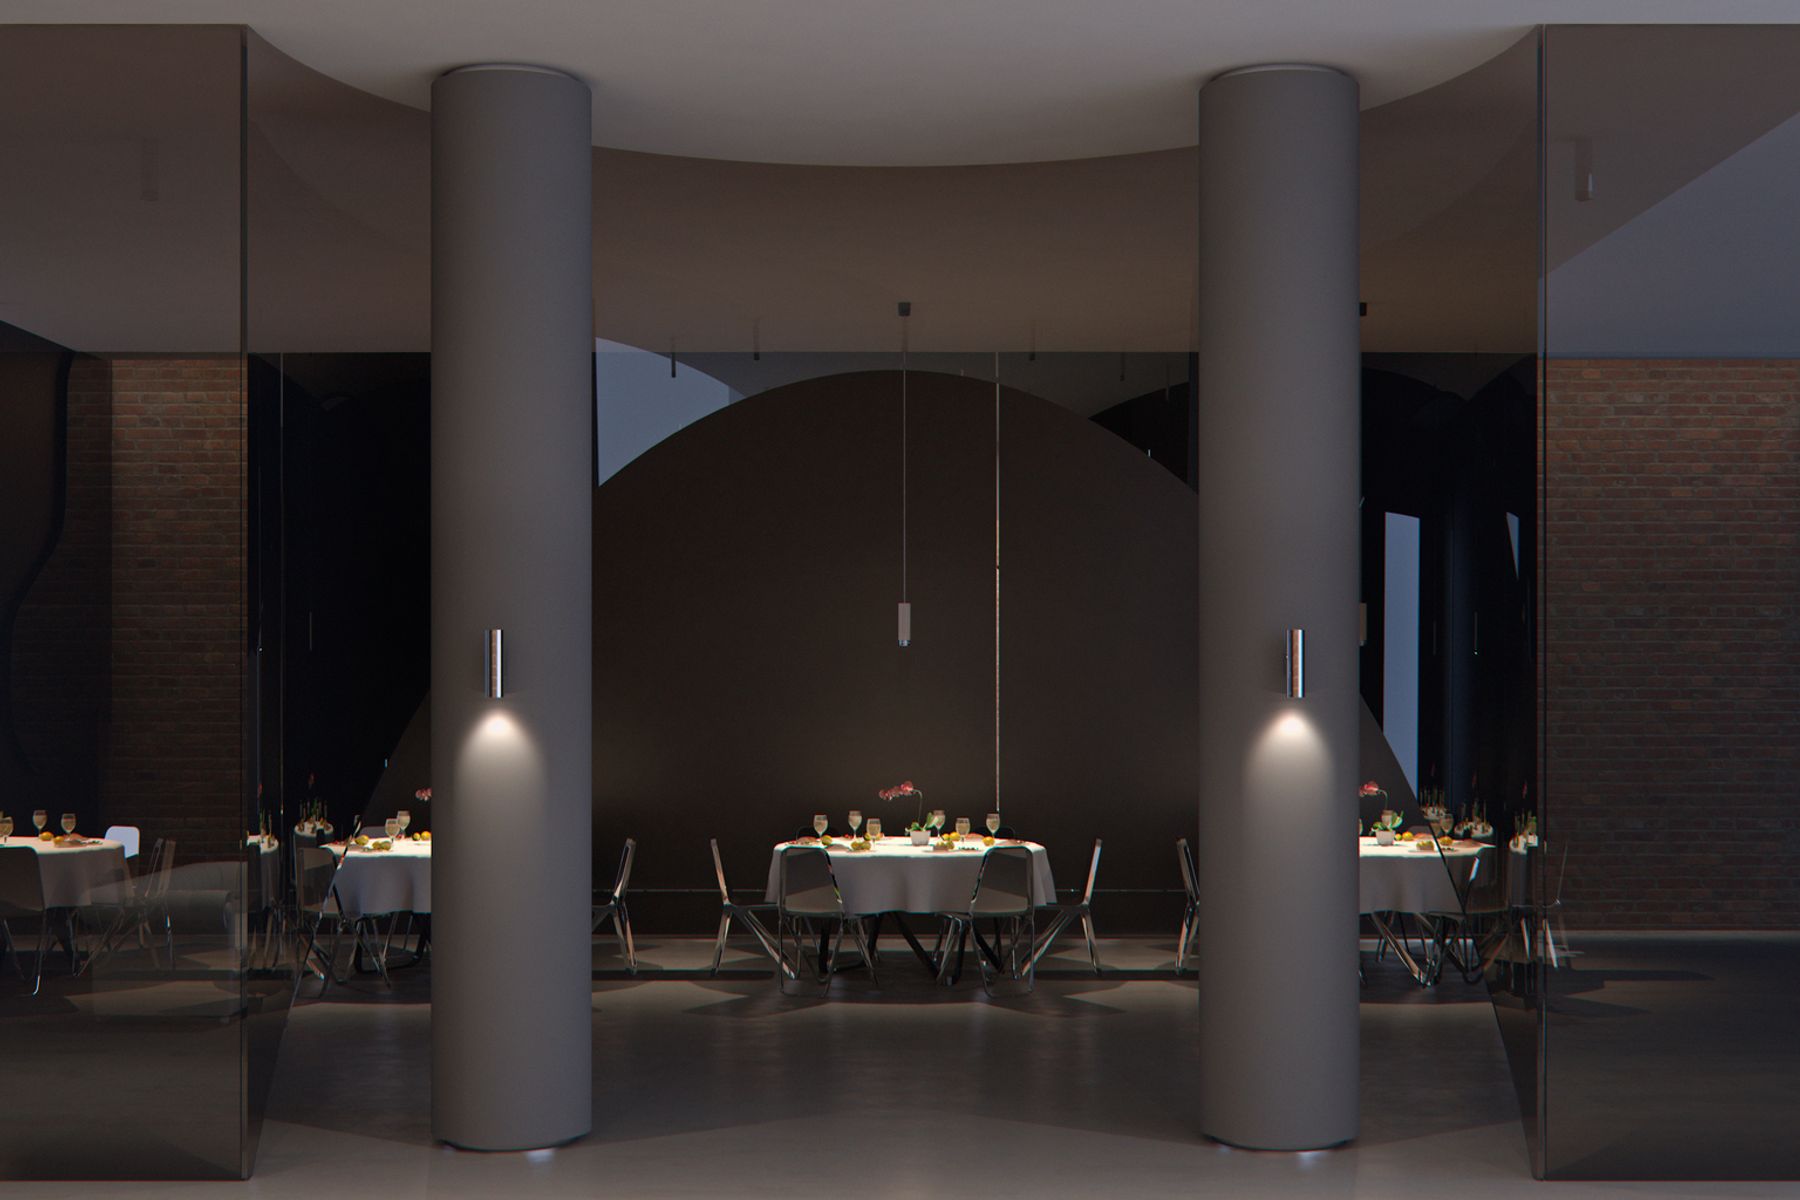 Starpoint Wandleuchten überzeugen durch ihr hochwertiges Design und atmosphärisches Licht, das einen visuellen Rhythmus schafft und vertikale Architekturelemente betont.